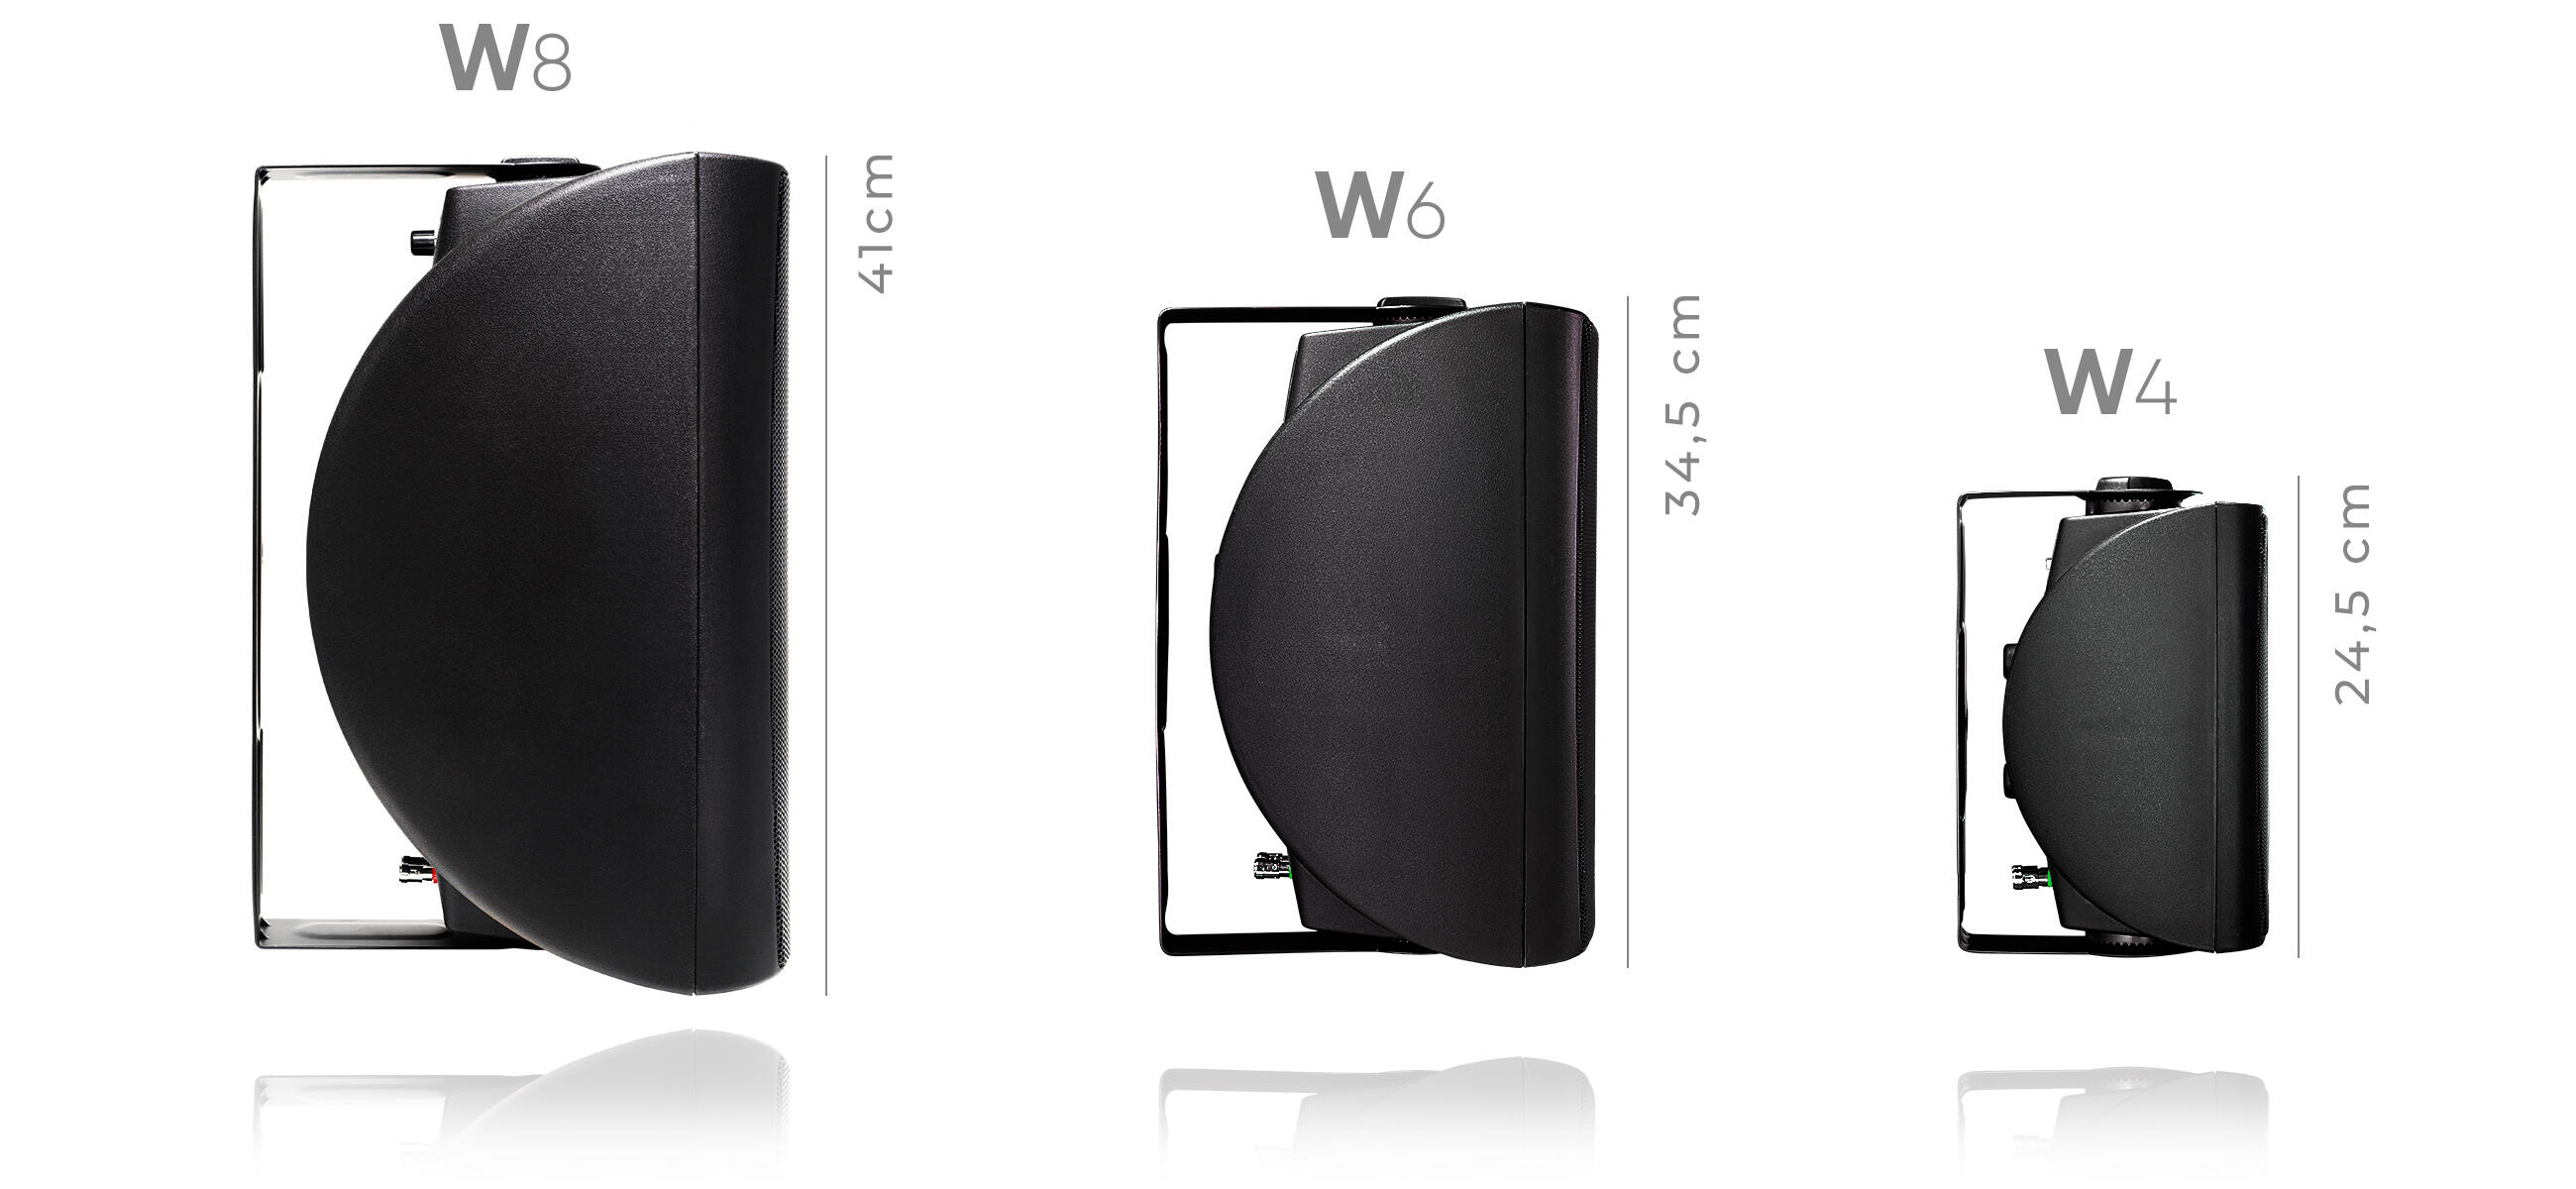 NEXT-Audiocom-W6-size